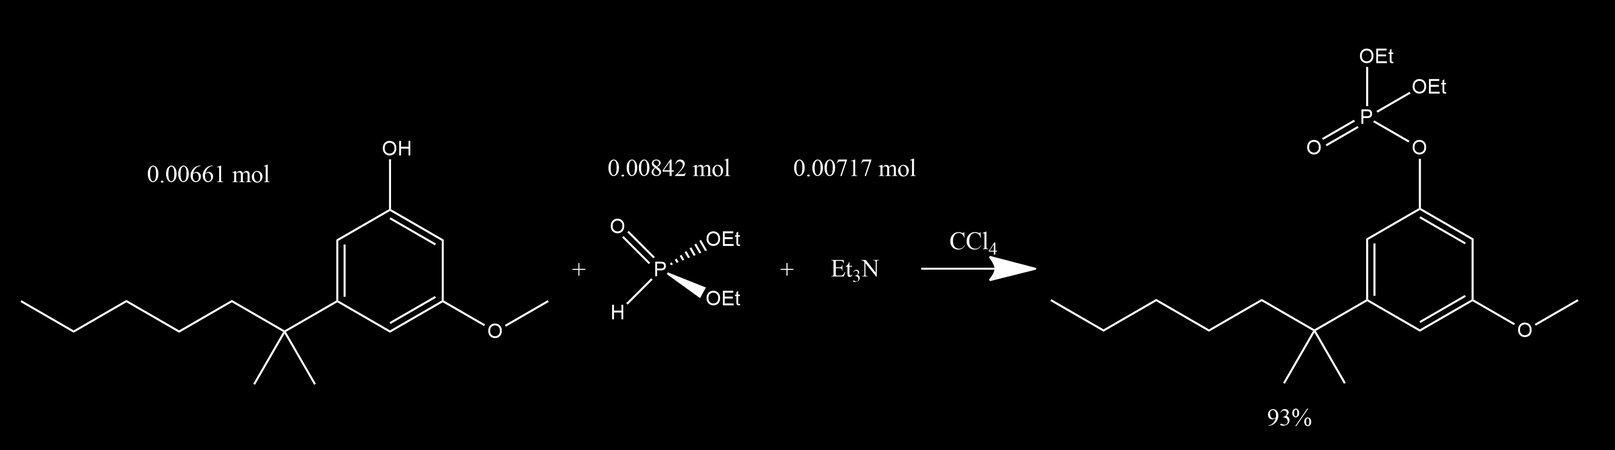 Synthesis of СР-47,497 2-3-methoxyphenyl-2-methylheptane.jpg